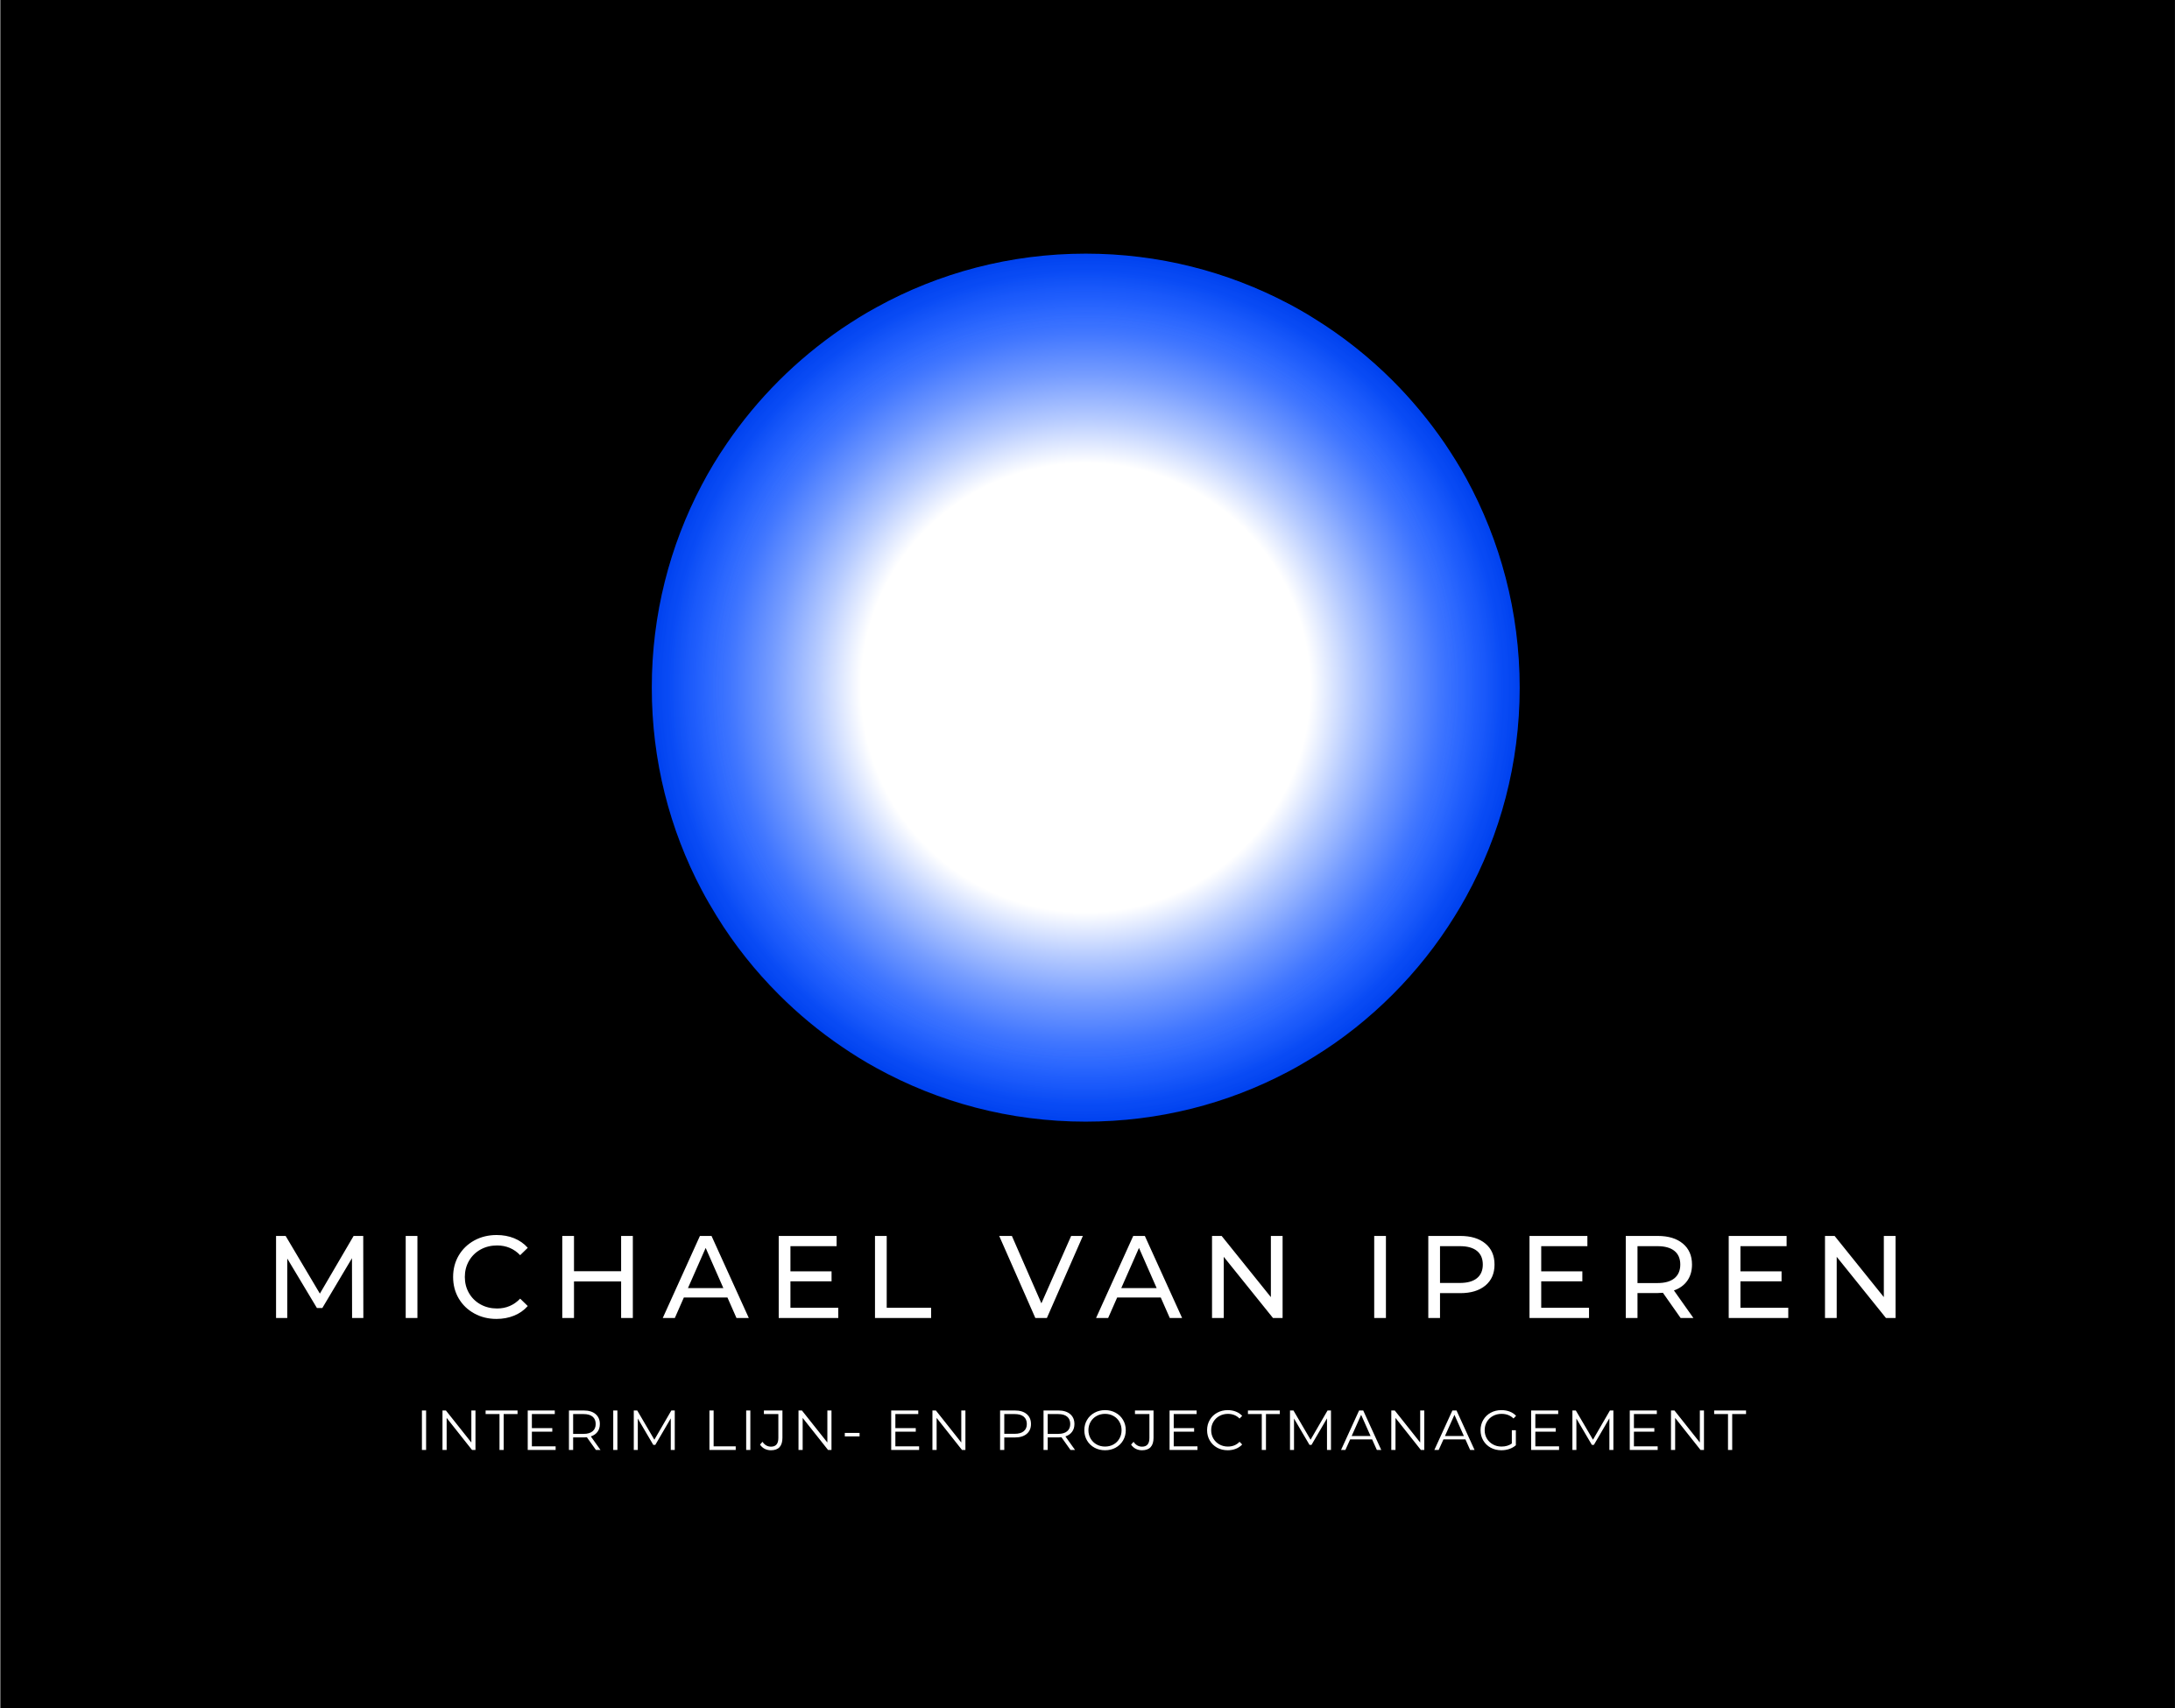 Michael van Iperen